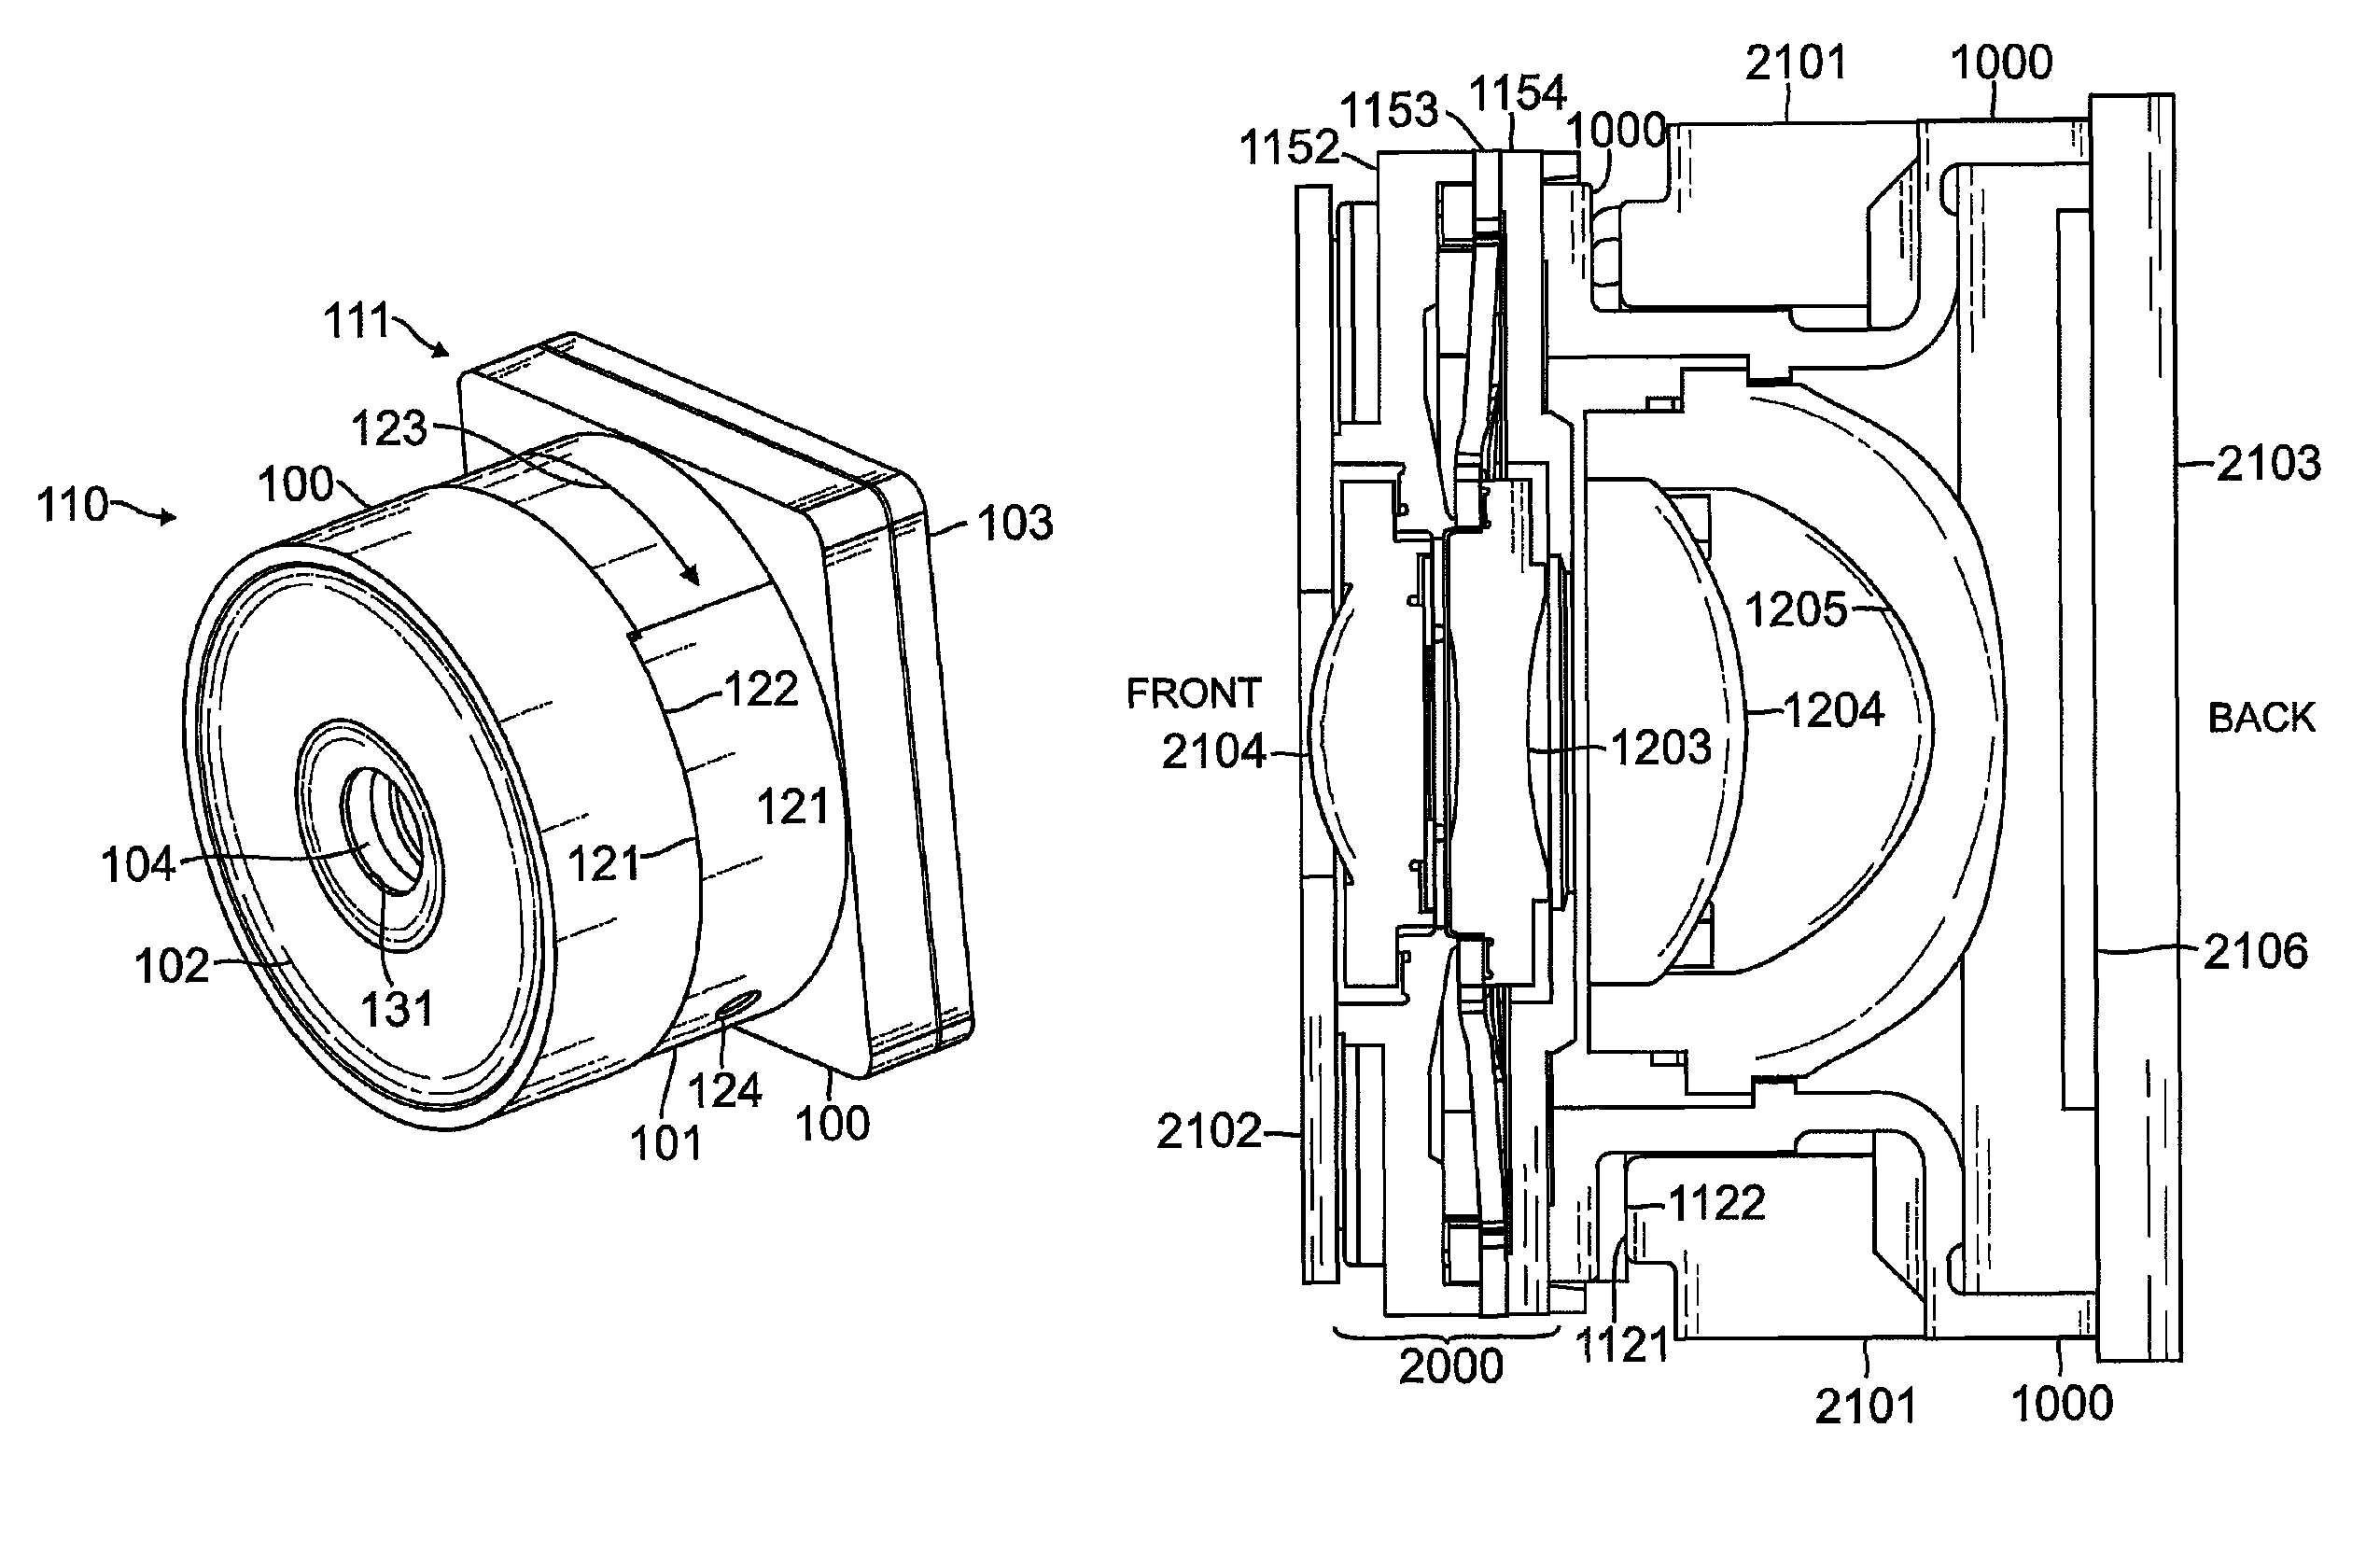 Integrated lens barrel